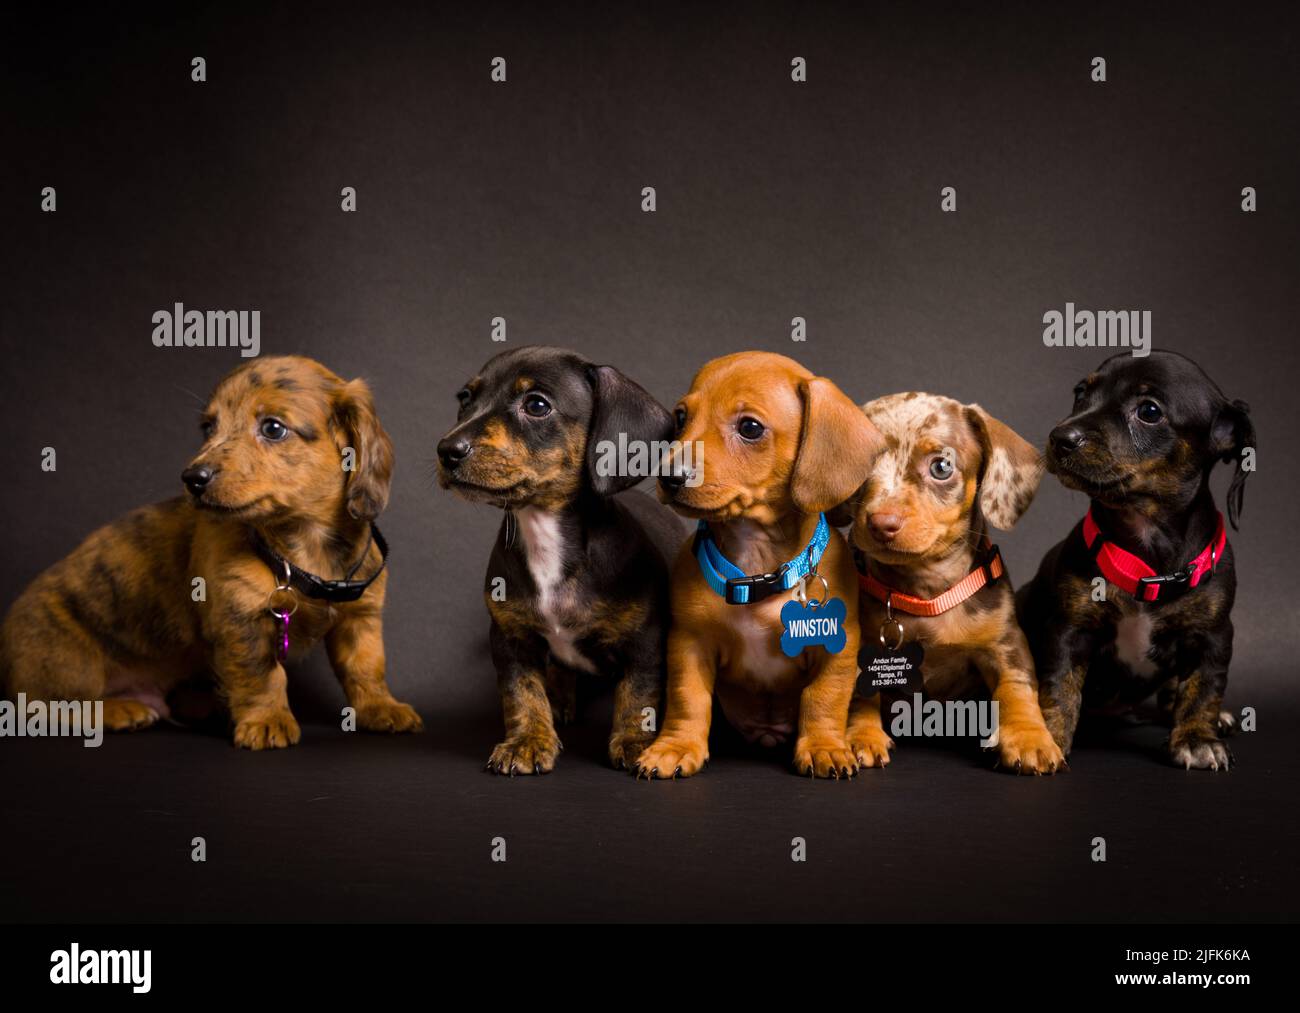 Cachorros de perro salchicha fotografías e imágenes de alta resolución -  Página 3 - Alamy